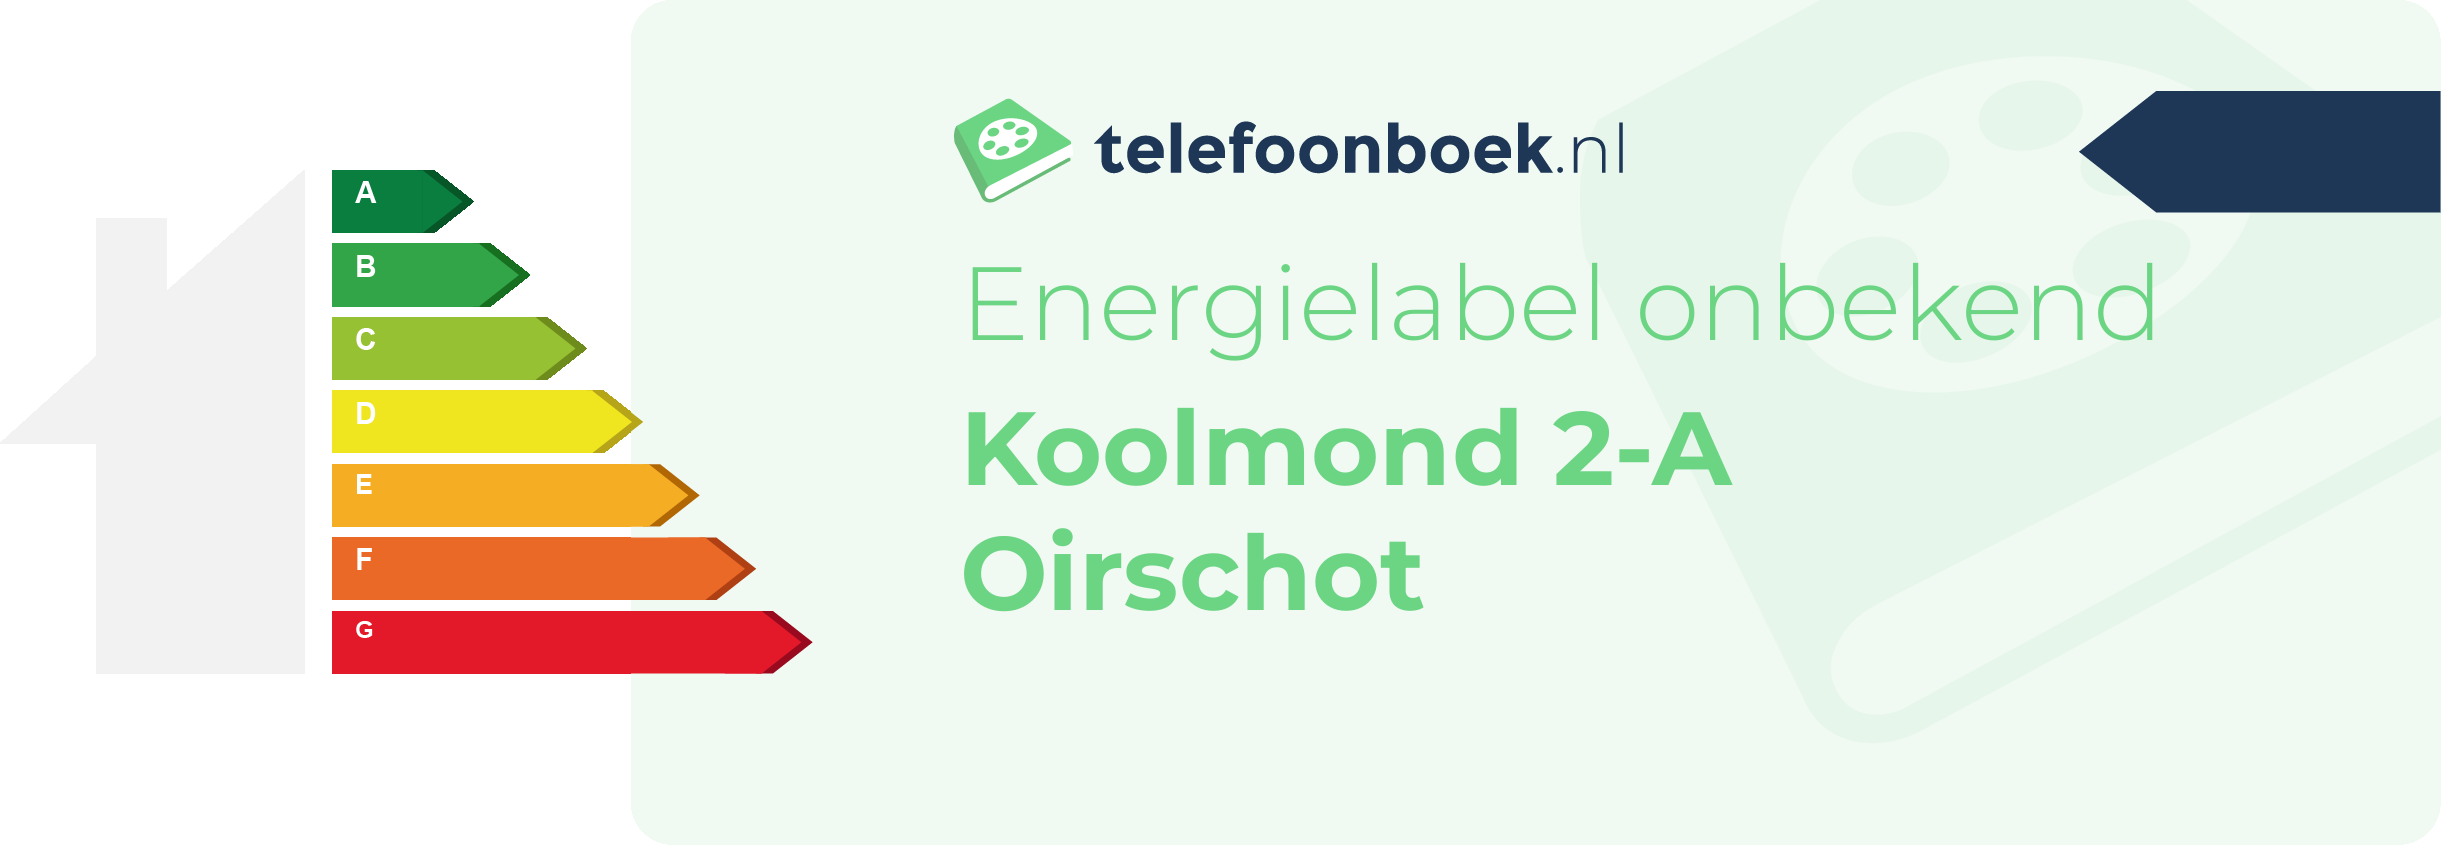 Energielabel Koolmond 2-A Oirschot